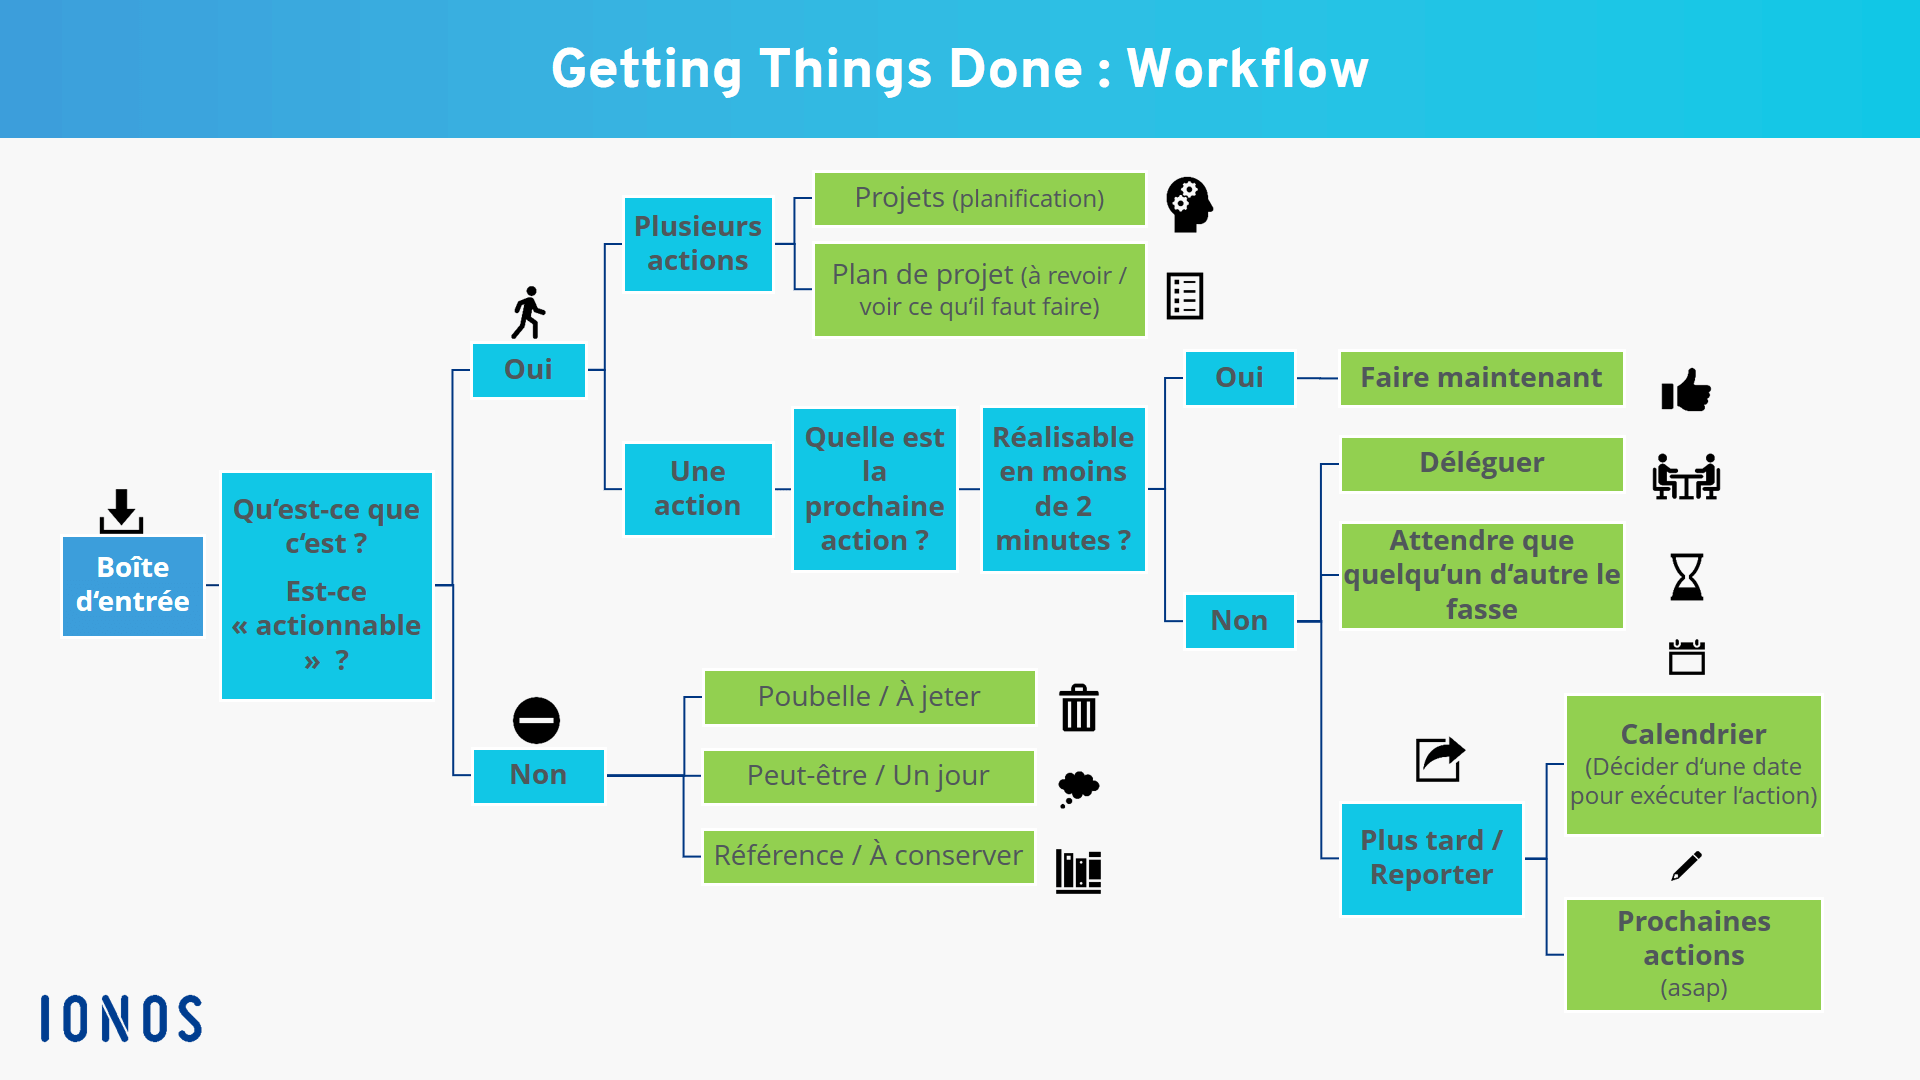 Workflow détaillé de la méthode GTD